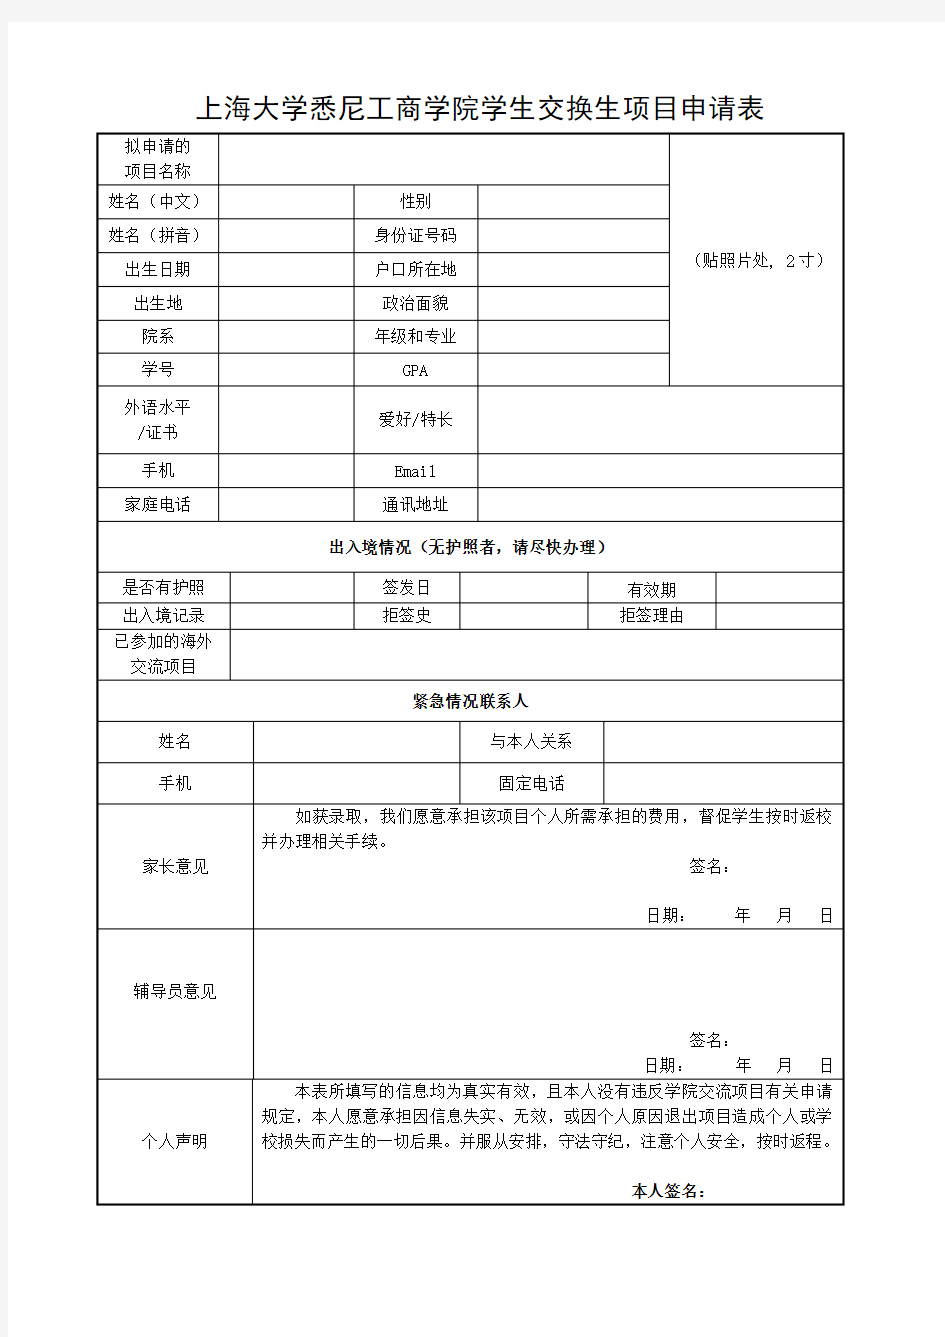 上海大学悉尼工商学院学生交换生项目申请表(仅限本科生使用)